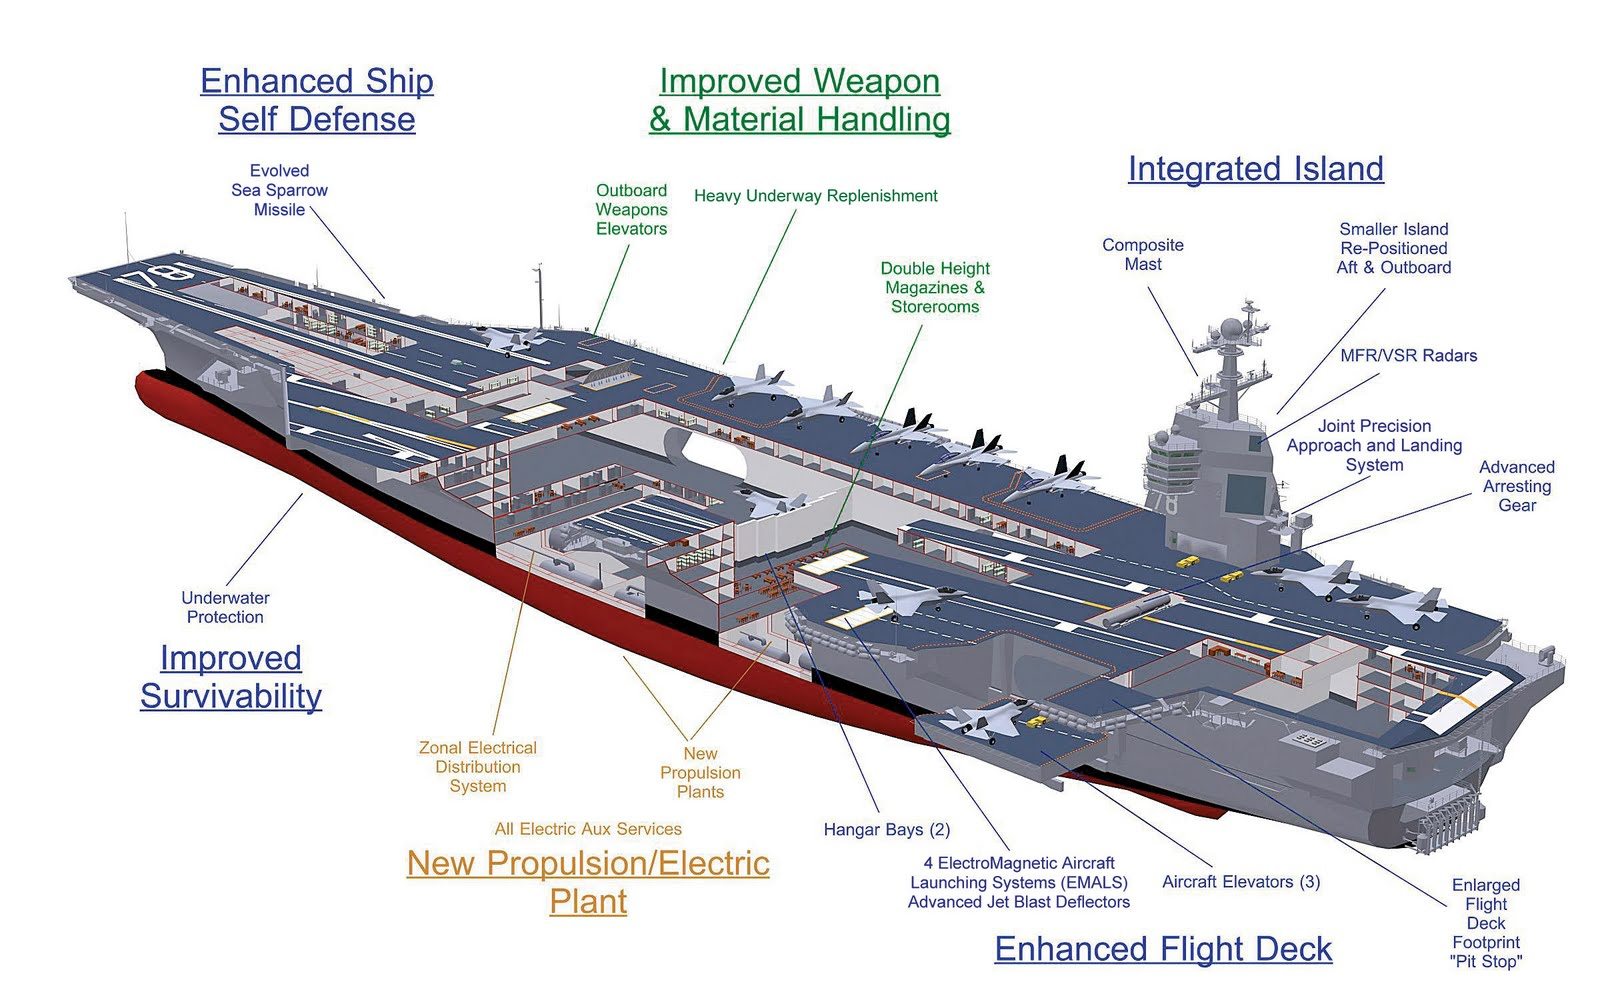 Uss gerald ford class aircraft carrier #5